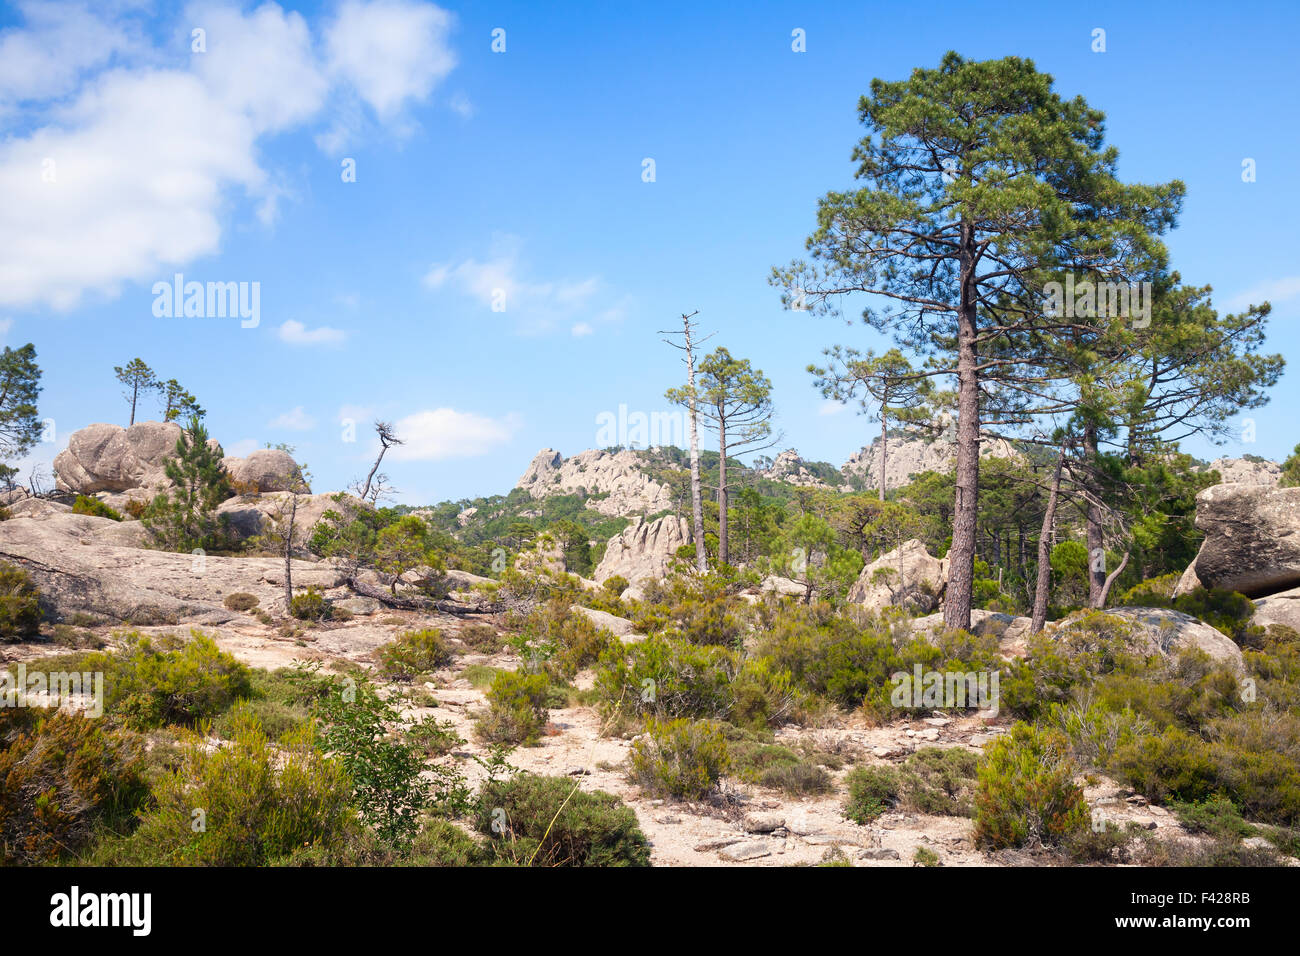 Montagne sauvage de pins. La partie sud de la Corse, France Banque D'Images